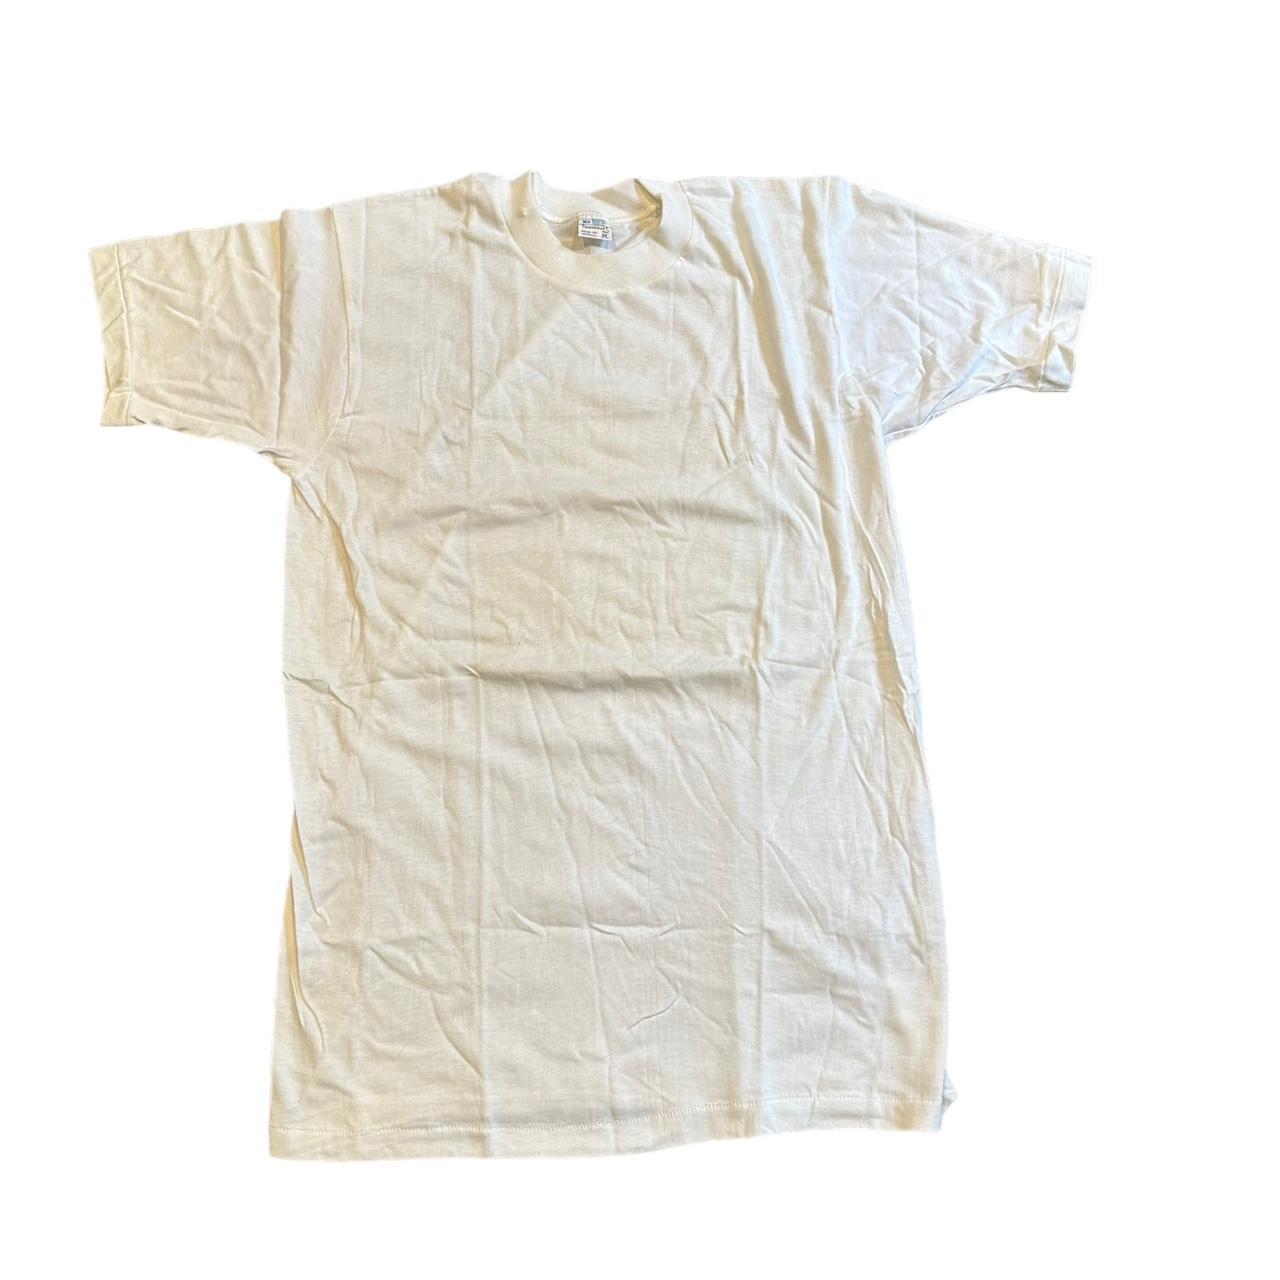 JCPenney Men's White T-shirt | Depop